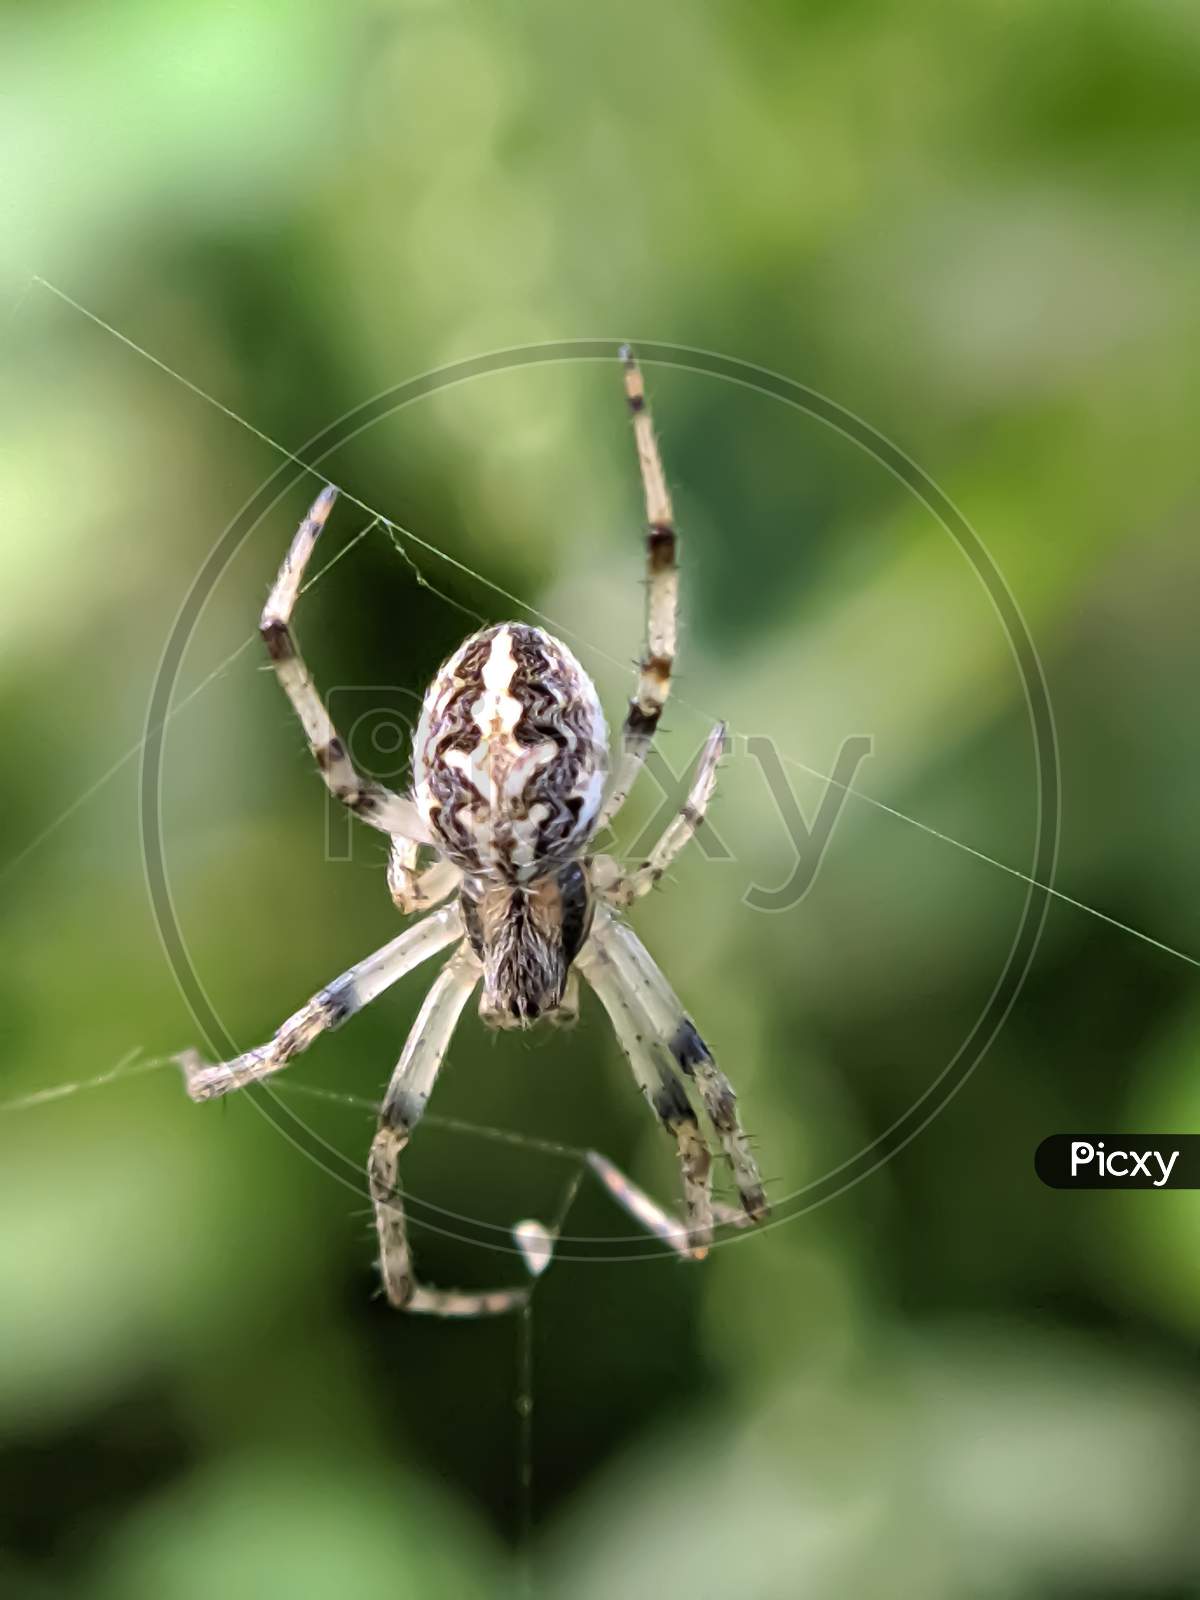 Araneus spider in indian village garden spider small insect